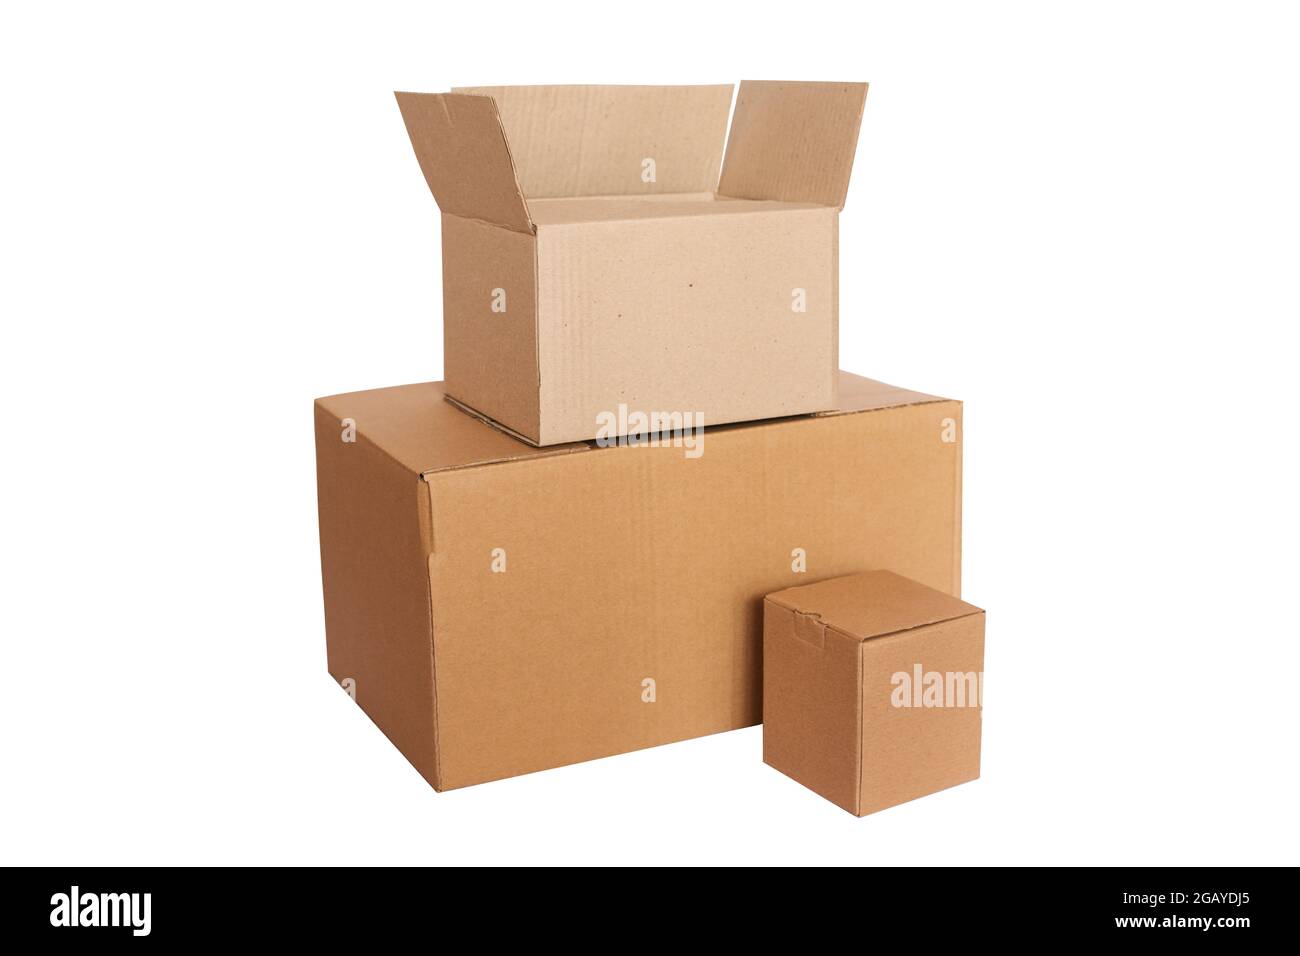 tre scatole vuote per la consegna o la donazione. scatola di cartone isolata su sfondo bianco. imballaggio ecologico Foto Stock